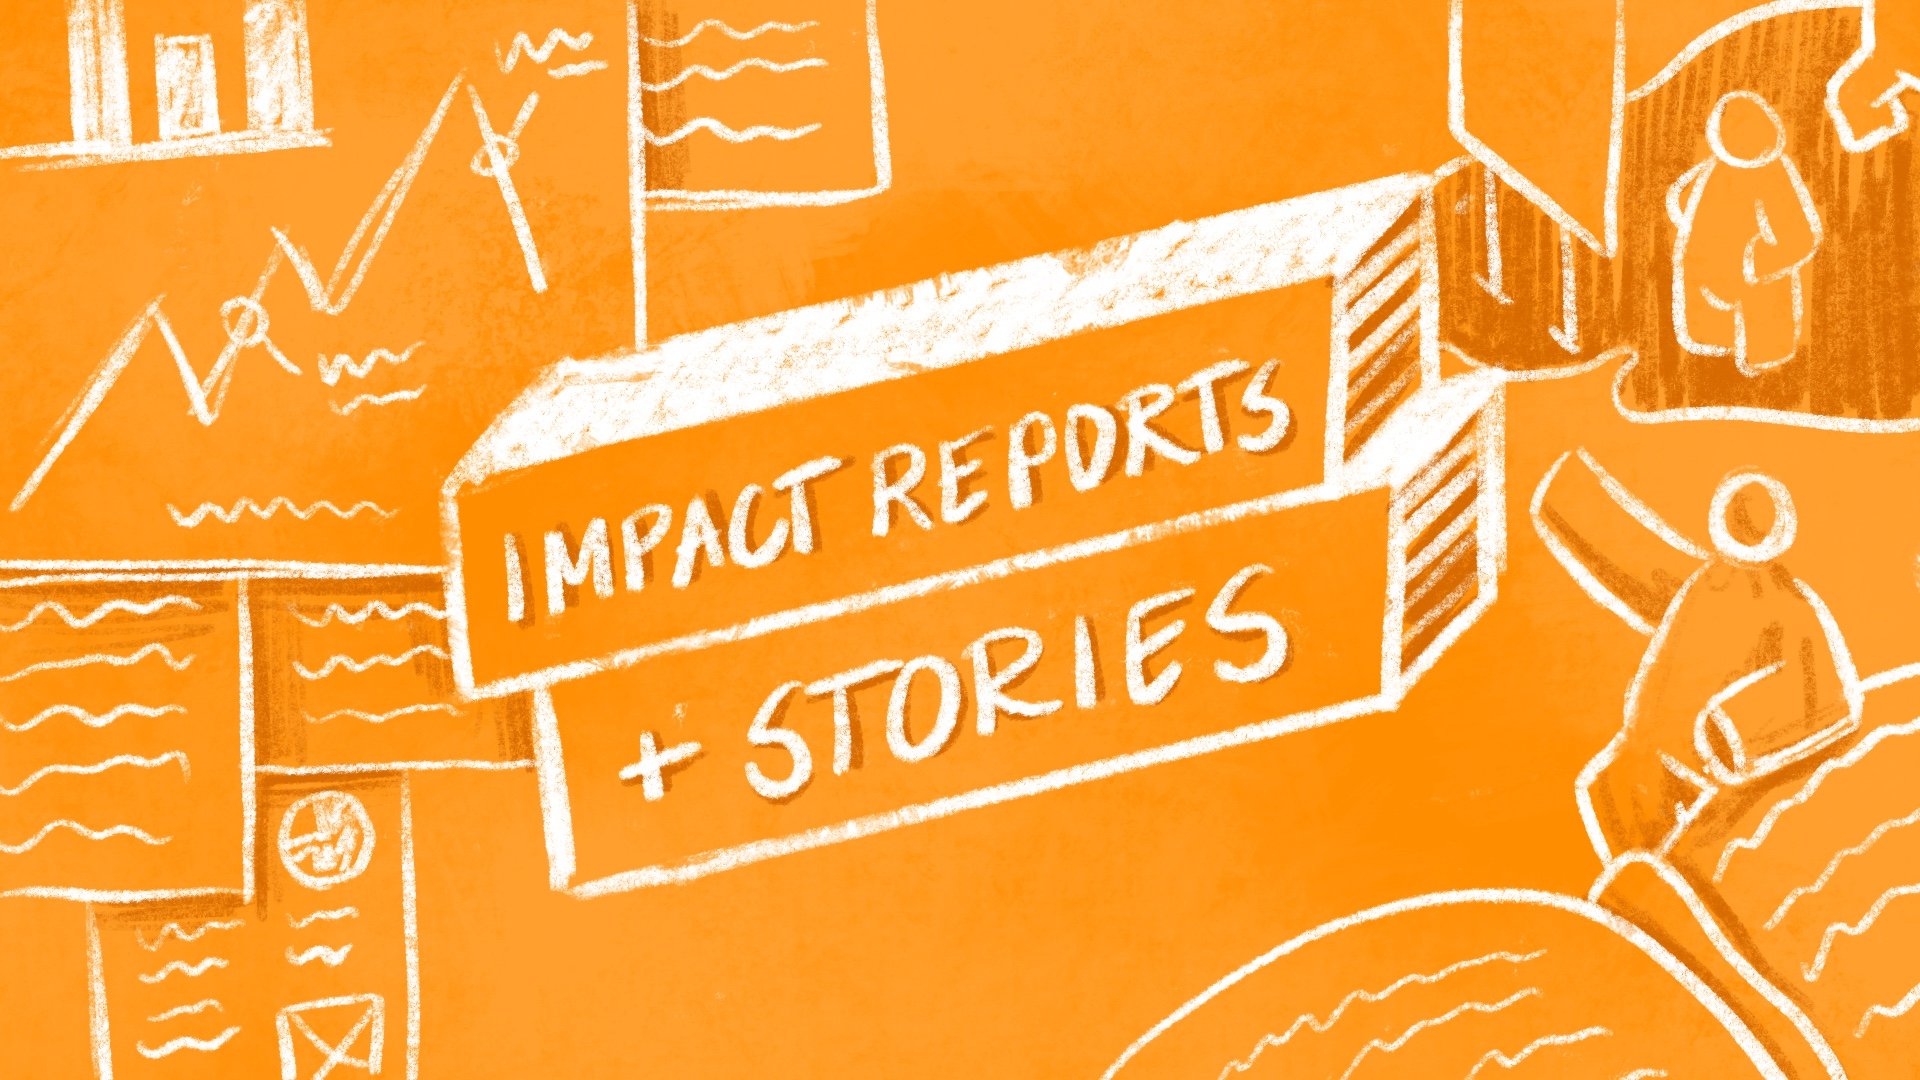 Impact Reports + Stories.jpeg